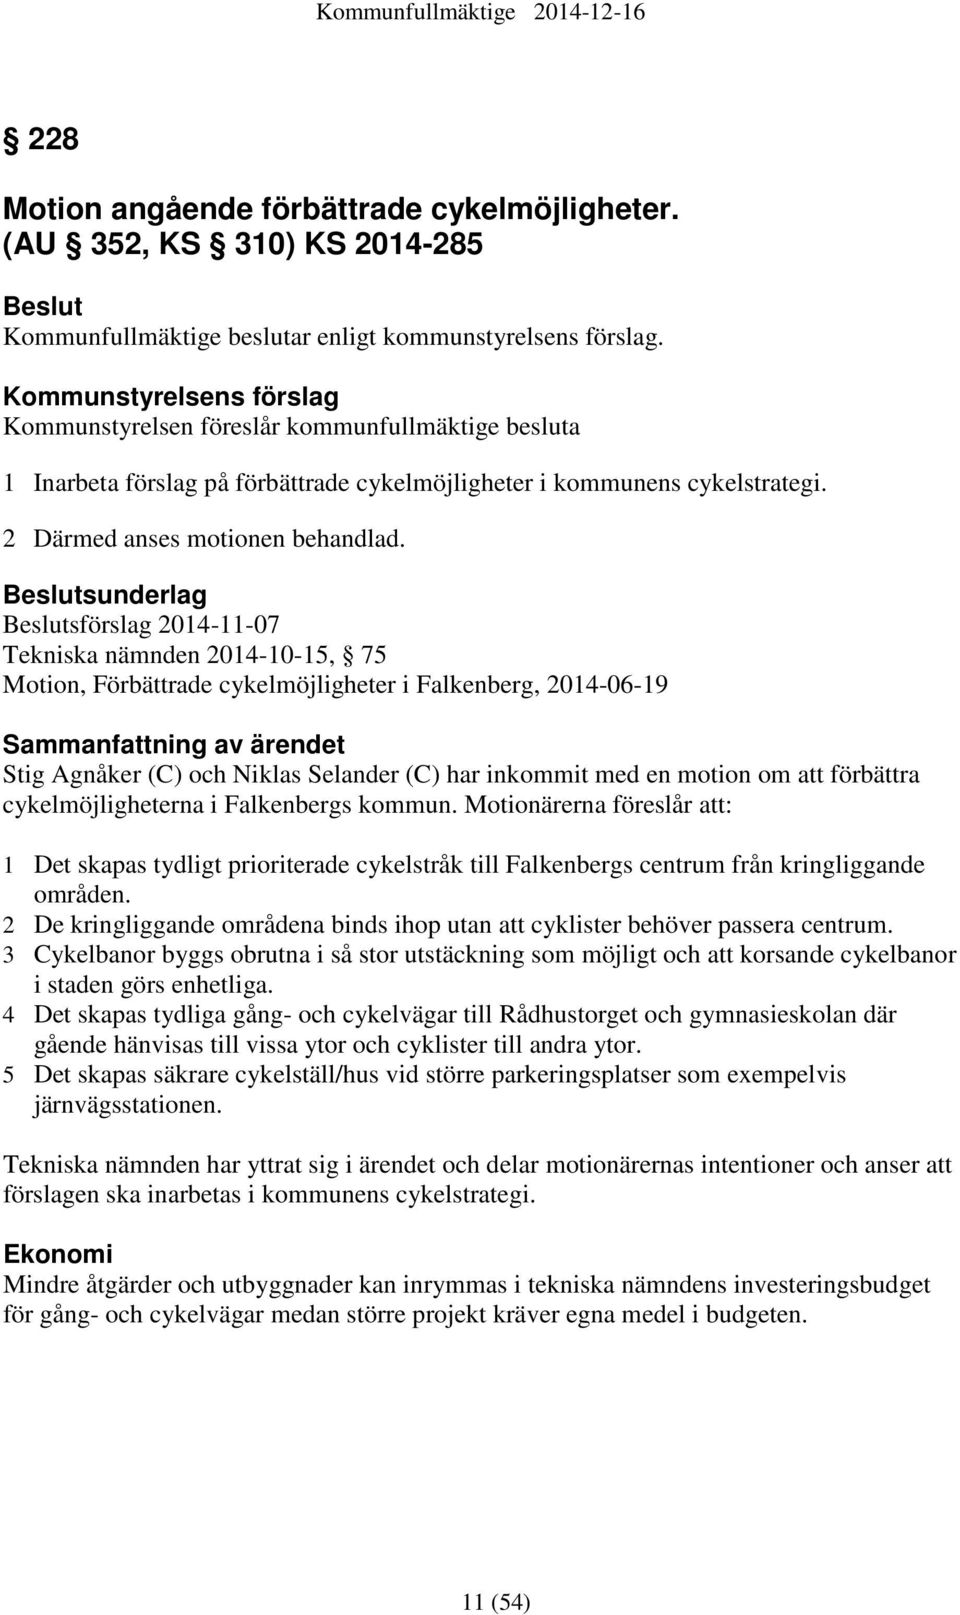 Beslutsunderlag Beslutsförslag 2014-11-07 Tekniska nämnden 2014-10-15, 75 Motion, Förbättrade cykelmöjligheter i Falkenberg, 2014-06-19 Sammanfattning av ärendet Stig Agnåker (C) och Niklas Selander